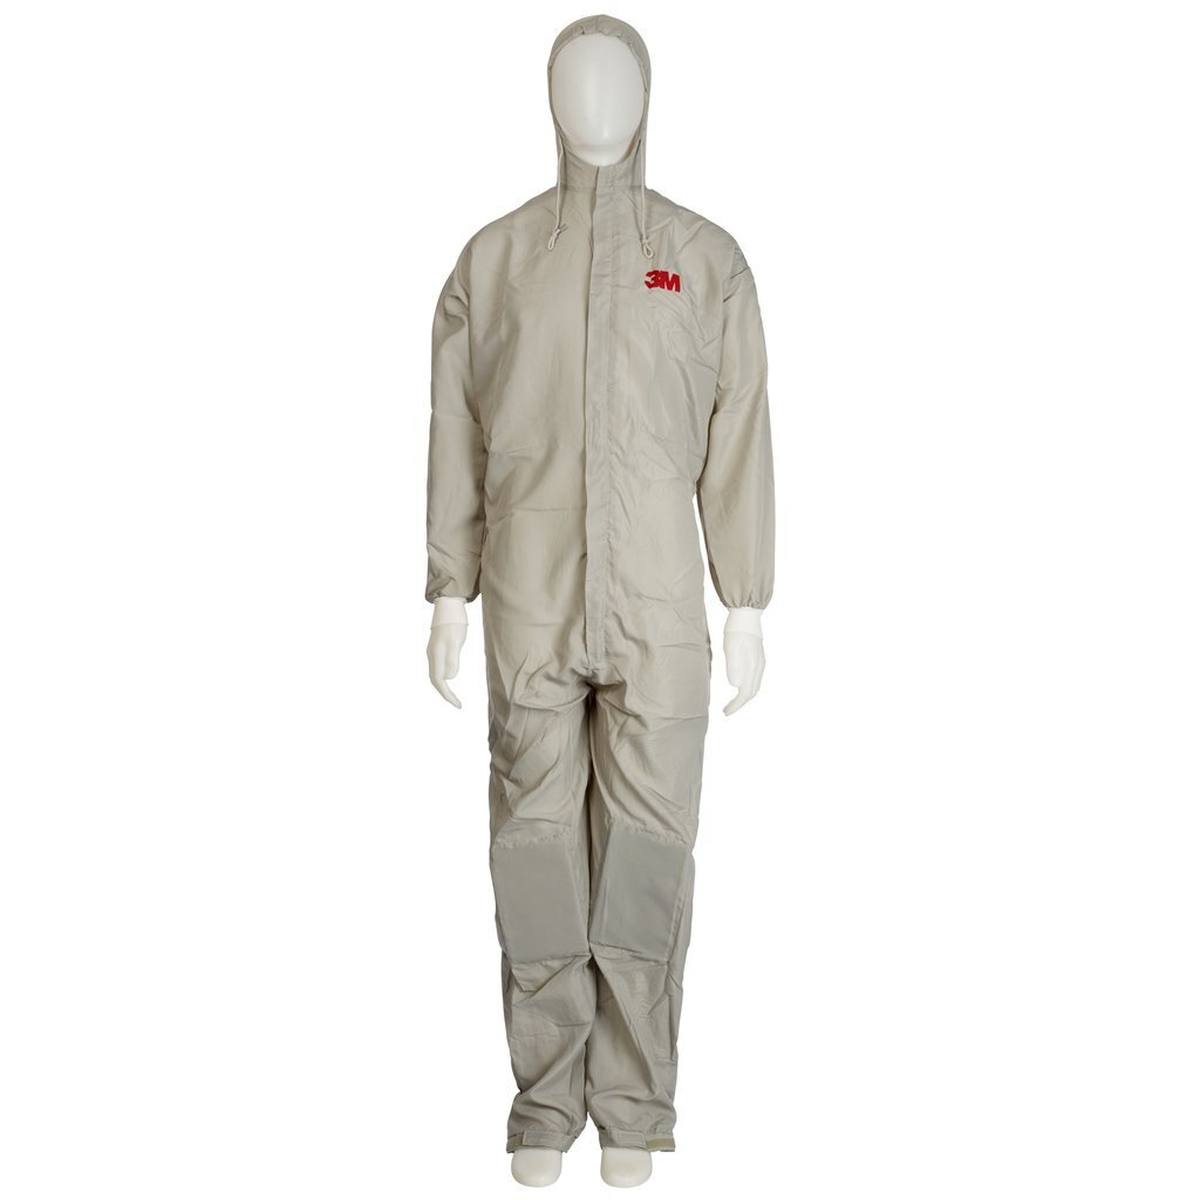 3M 50425 Combinaison de protection, taille XXL, respirante, genouillères, poches pour pantalon, matériau : tissu polyester léger, poches latérales, ouvertures dans le dos pour l'évacuation de la chaleur